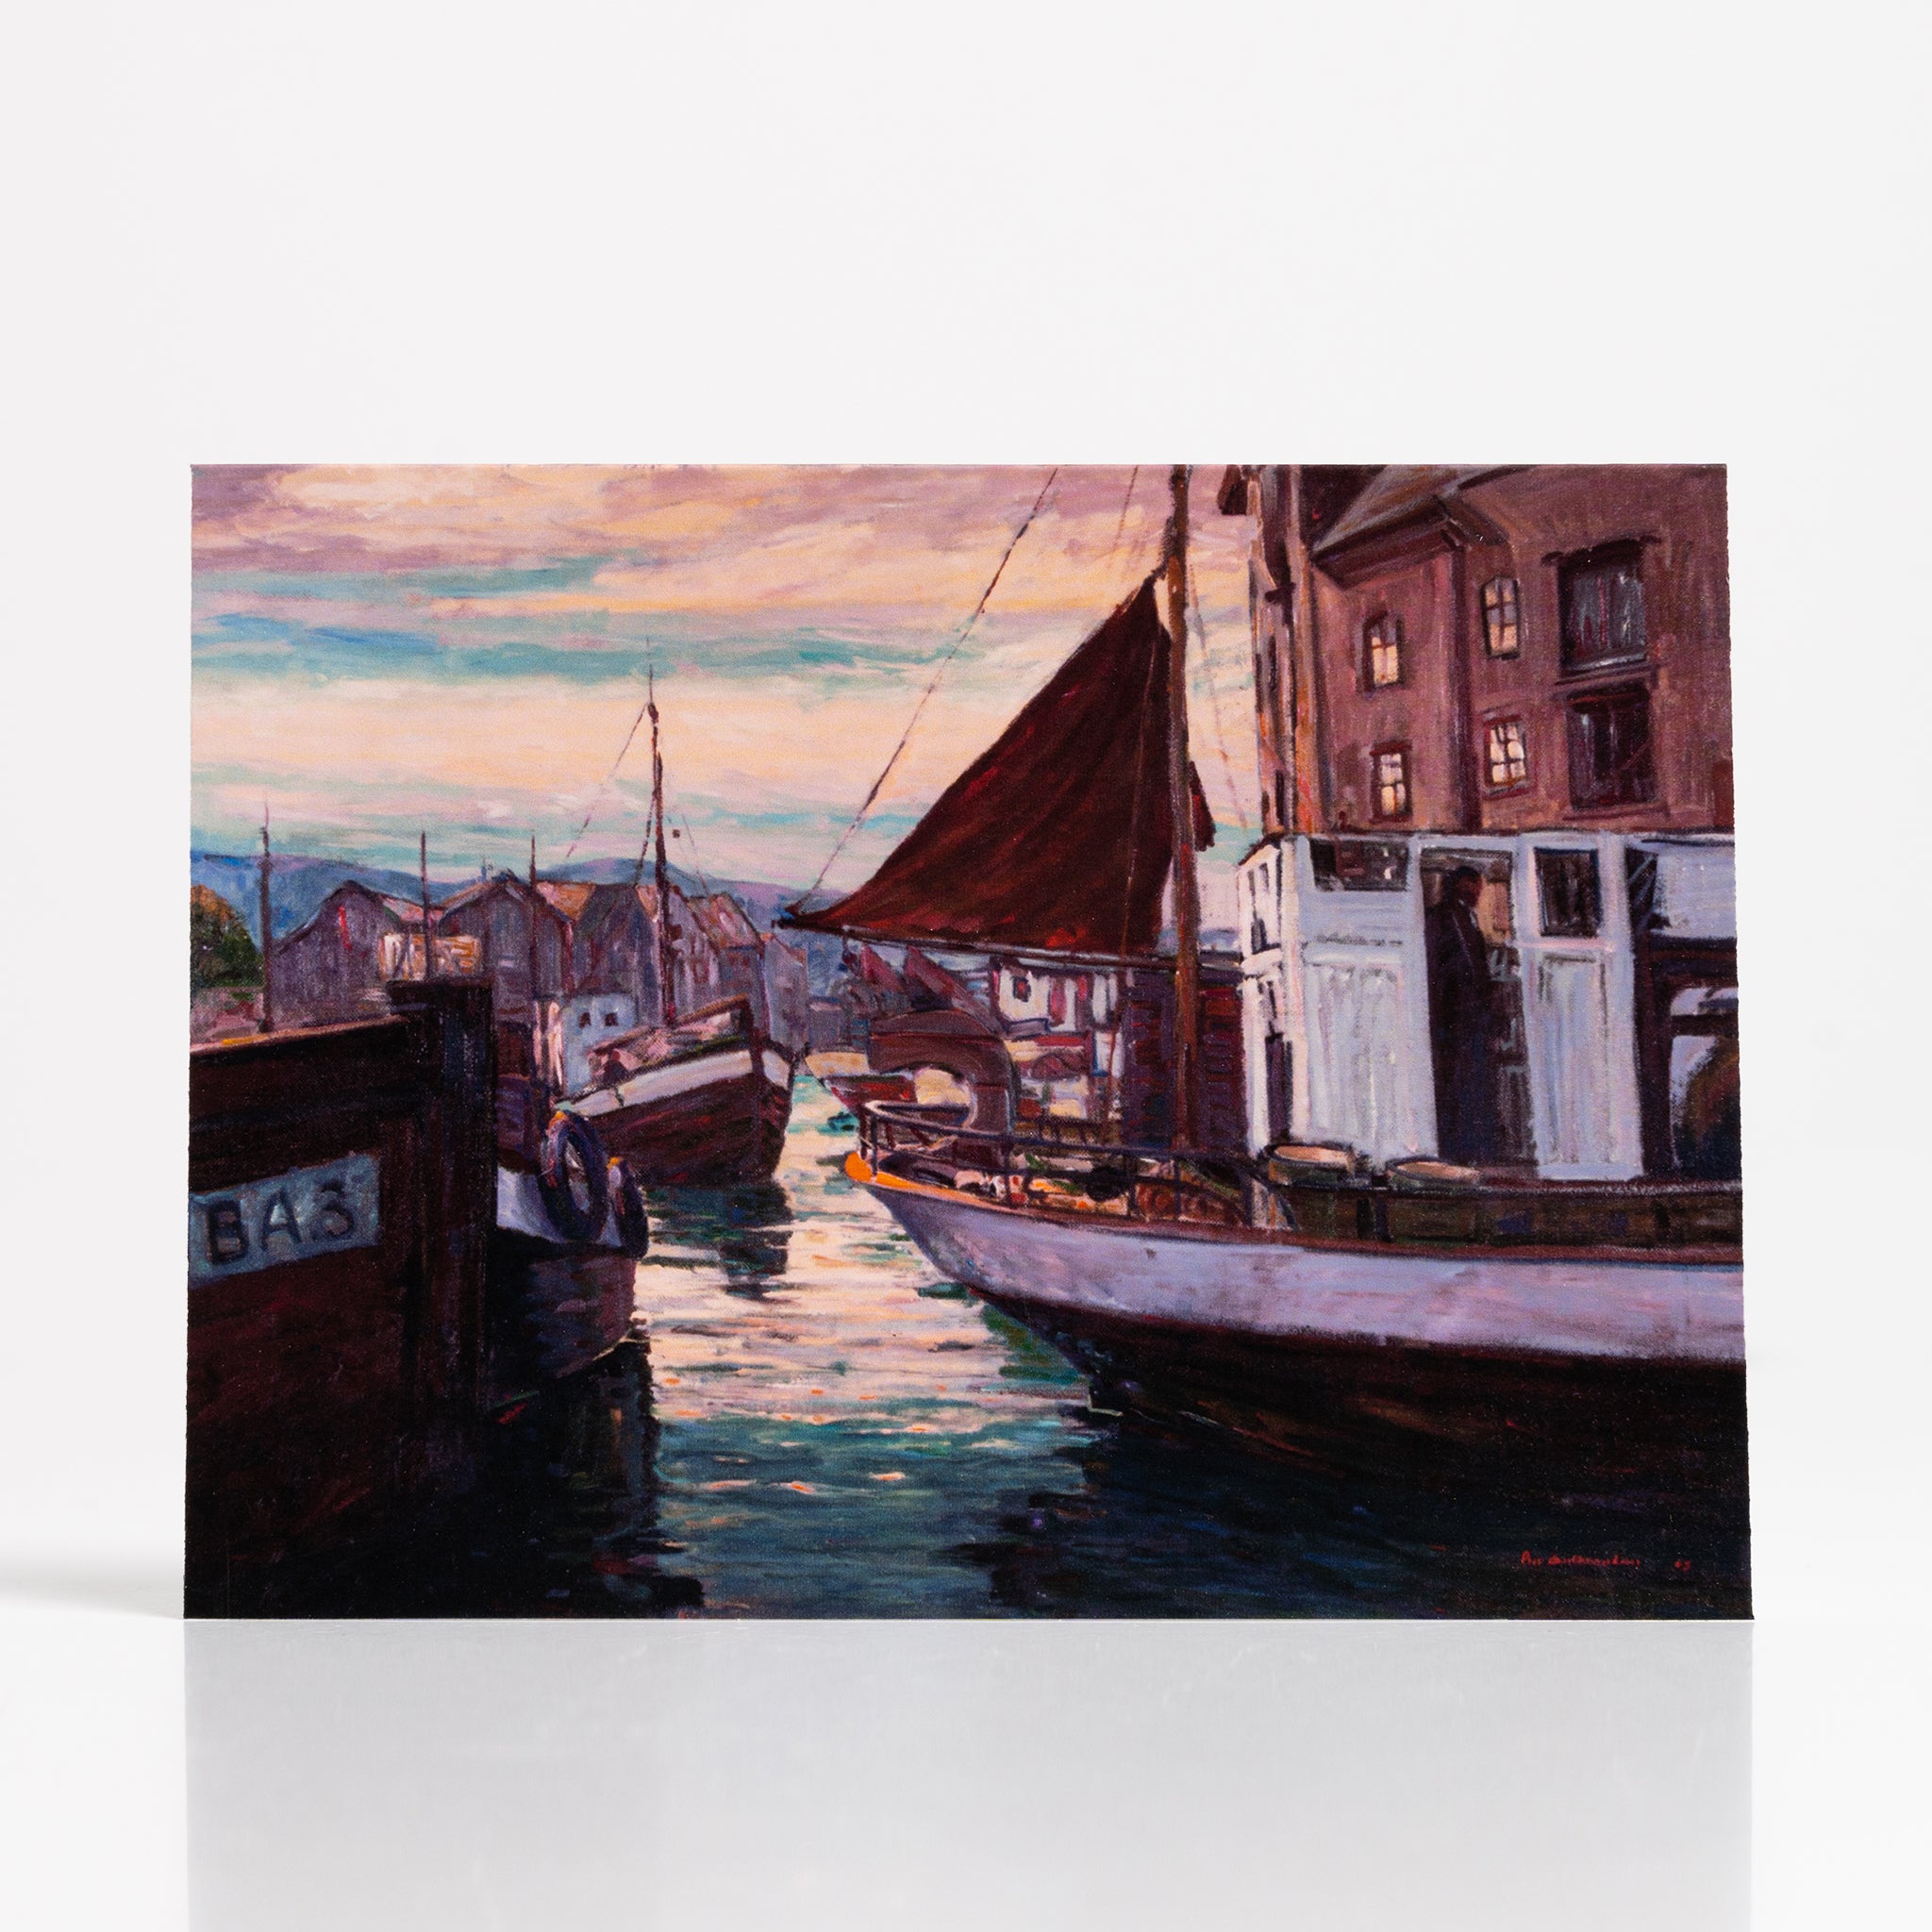 Twilight Harbor at Alesund by Peer Gulbrandsen - Vesterheim Collection Card